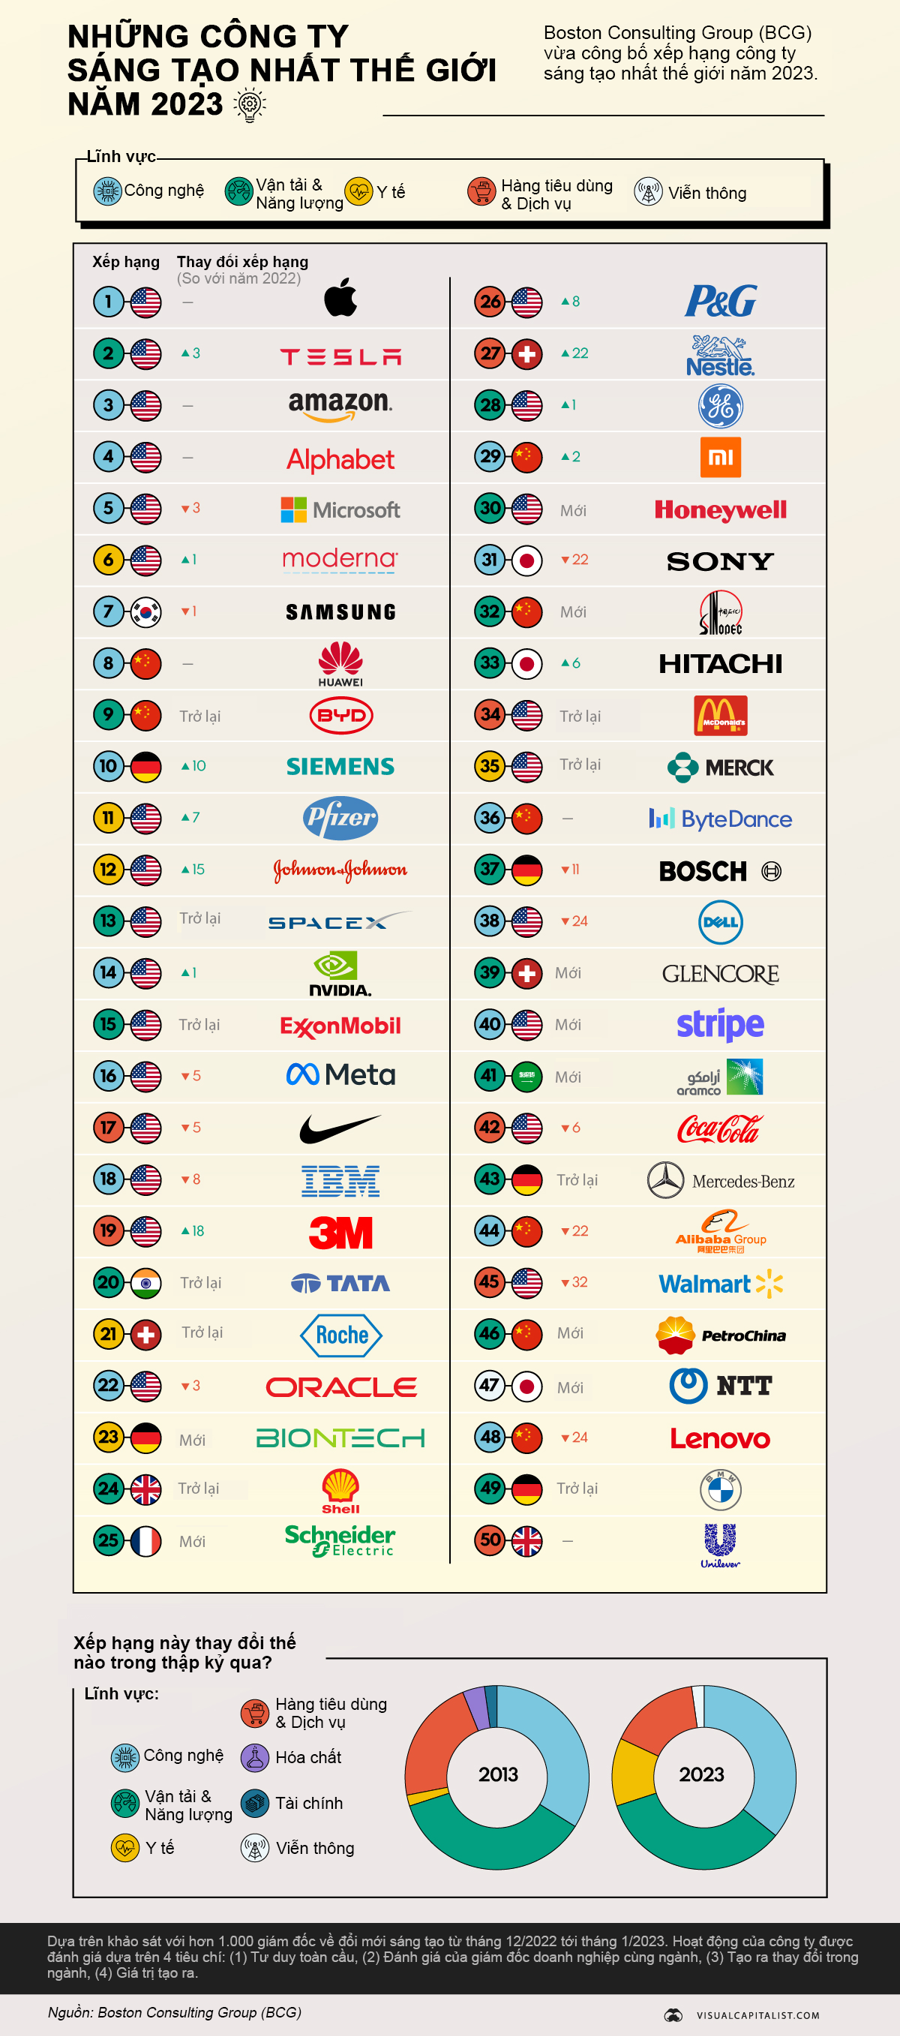 50 công ty sáng tạo nhất thế giới năm 2023  - Ảnh 1